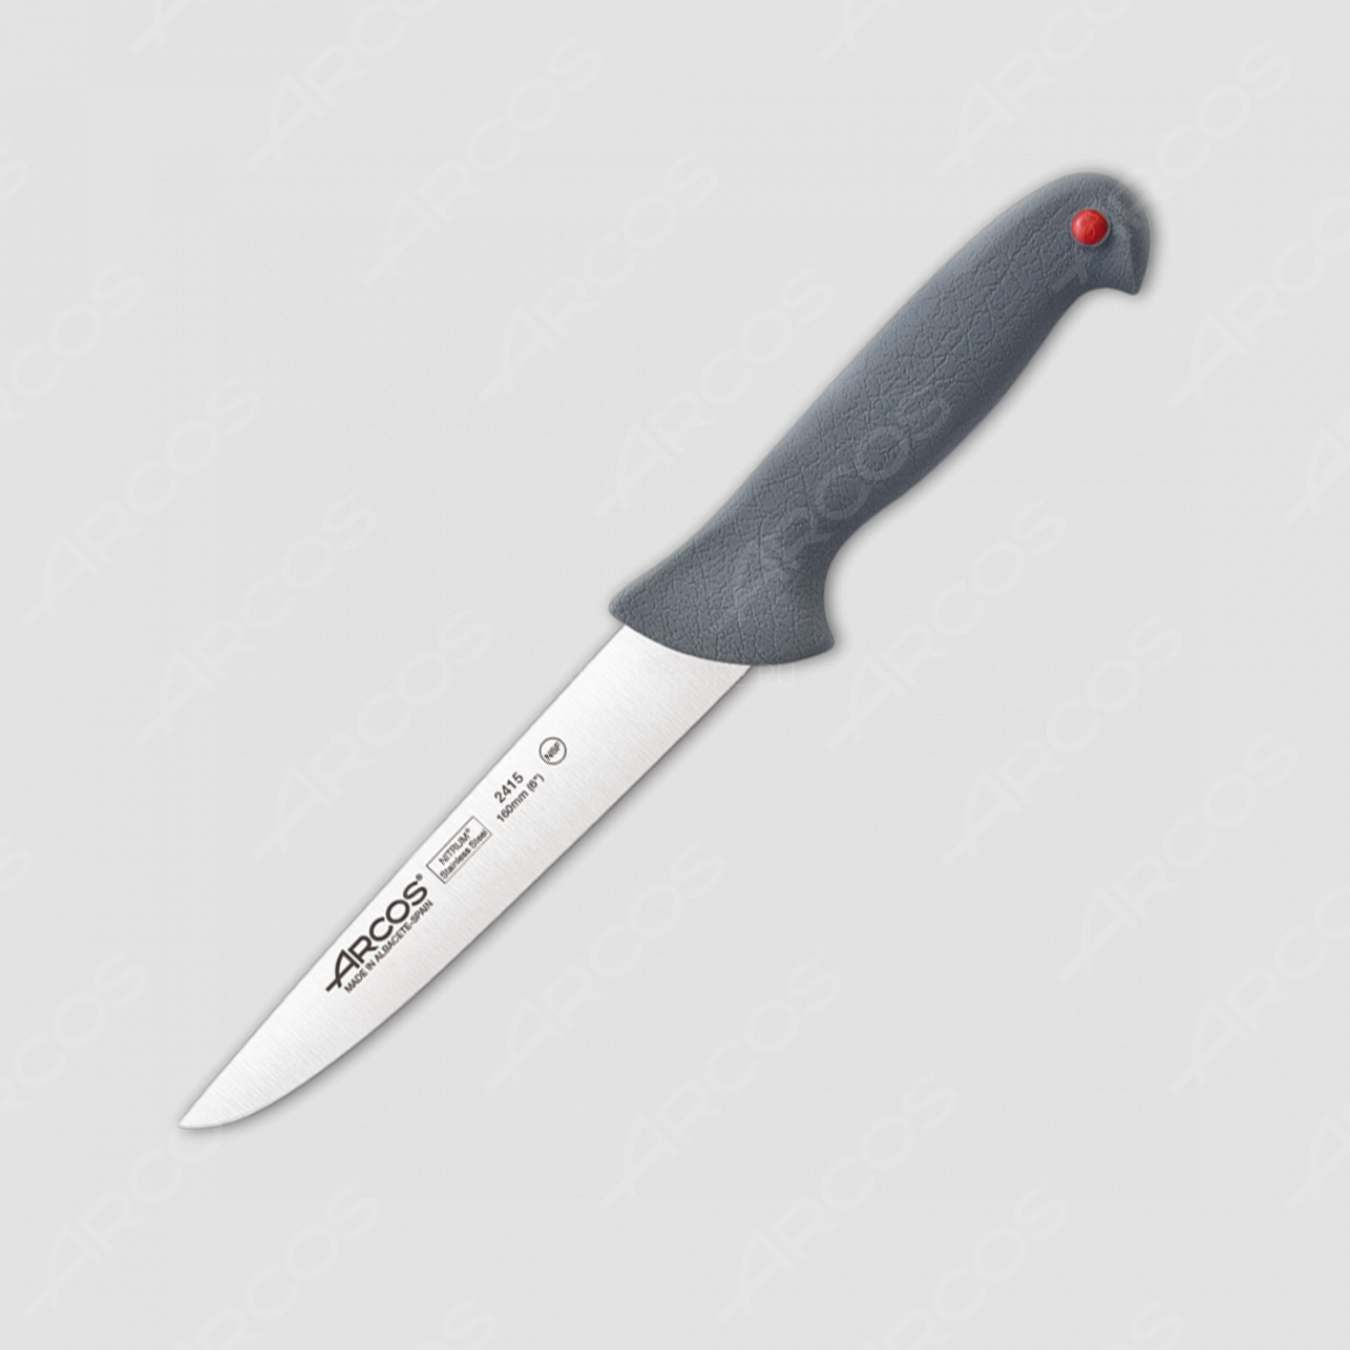 Нож кухонный 16 см, серия Colour-prof, ARCOS, Испания